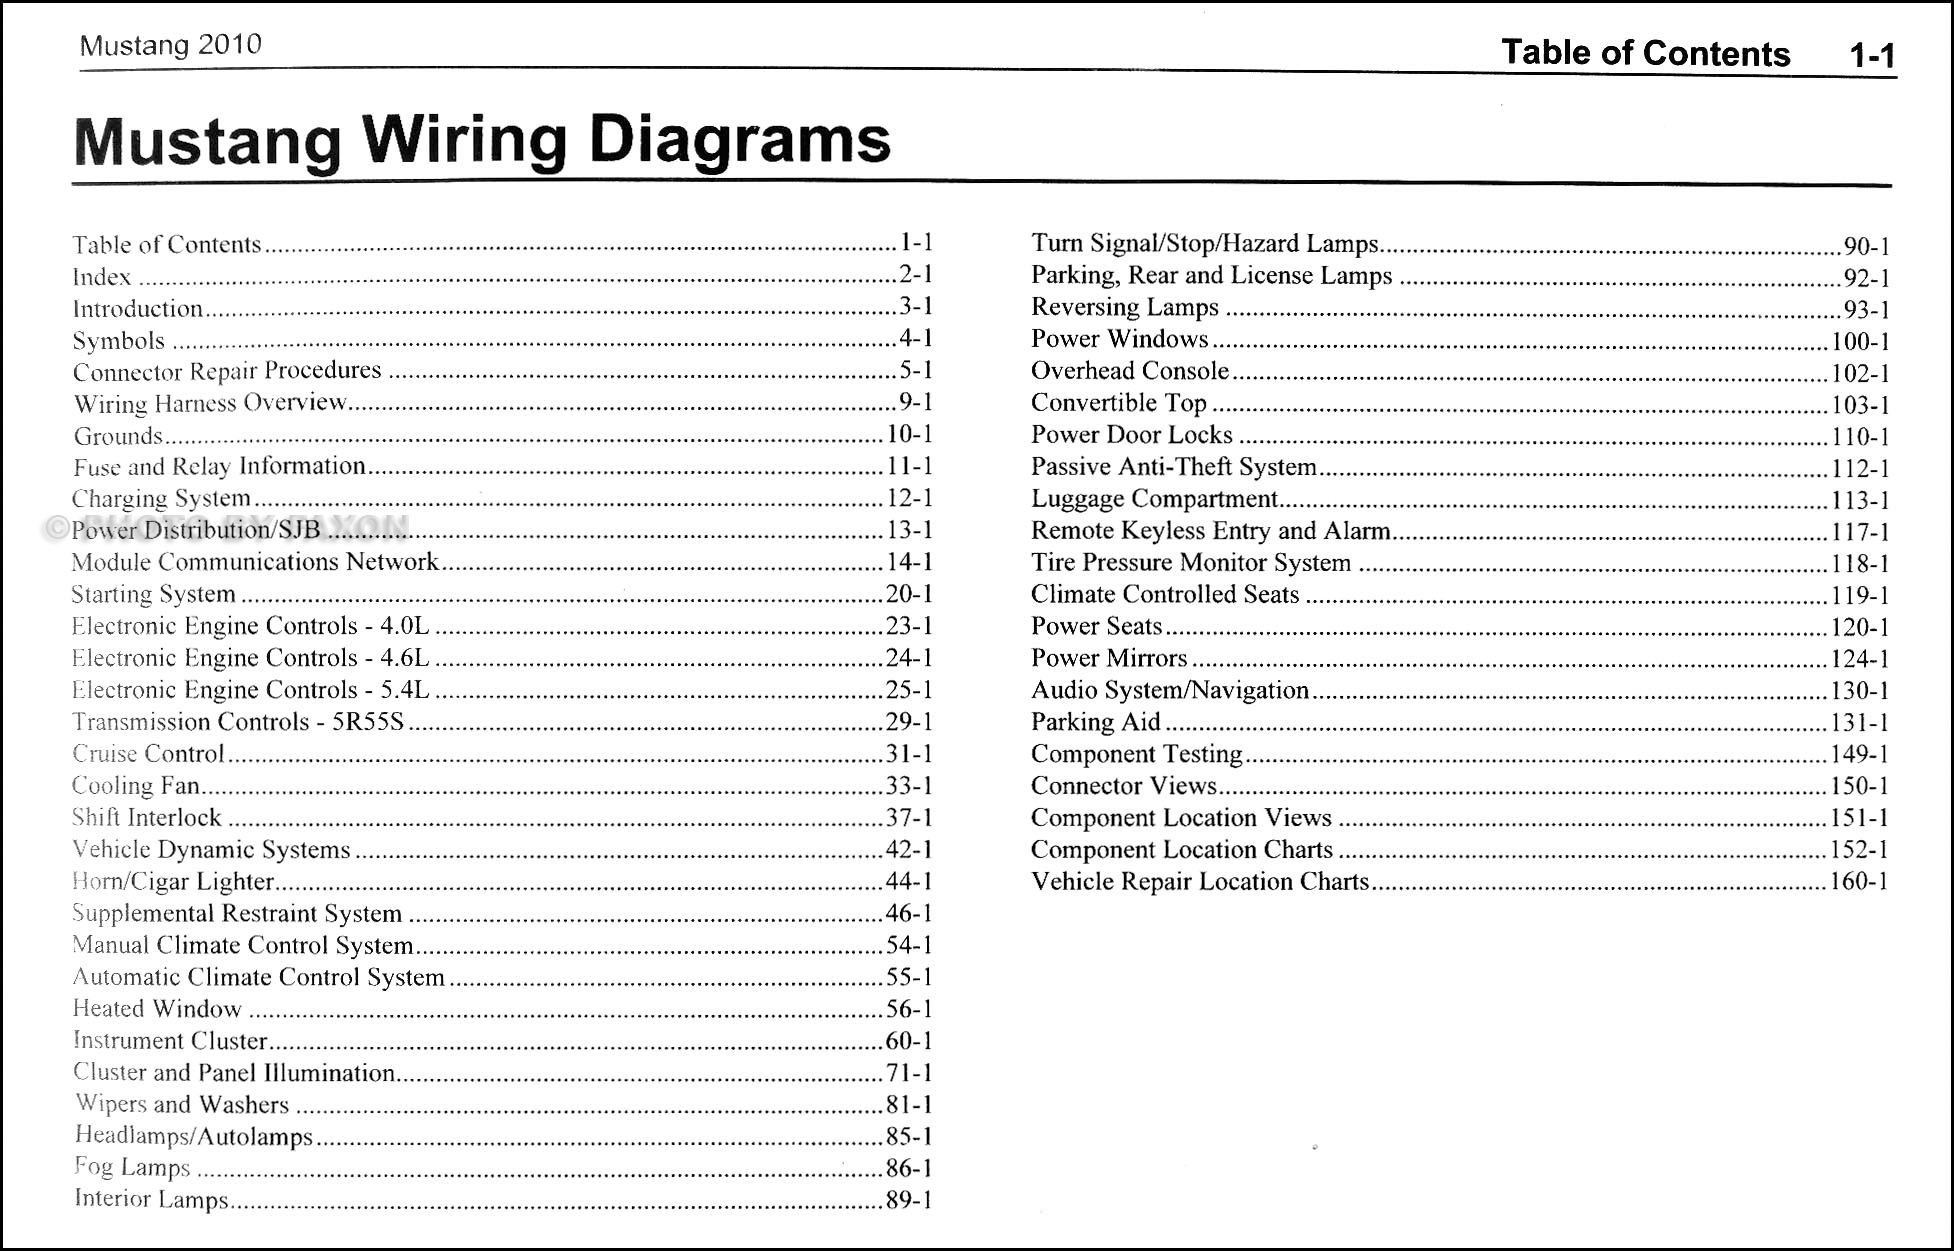 1987 Ford Mustang Wiring Diagram from cfd84b34cf9dfc880d71-bd309e0dbcabe608601fc9c9c352796e.ssl.cf1.rackcdn.com